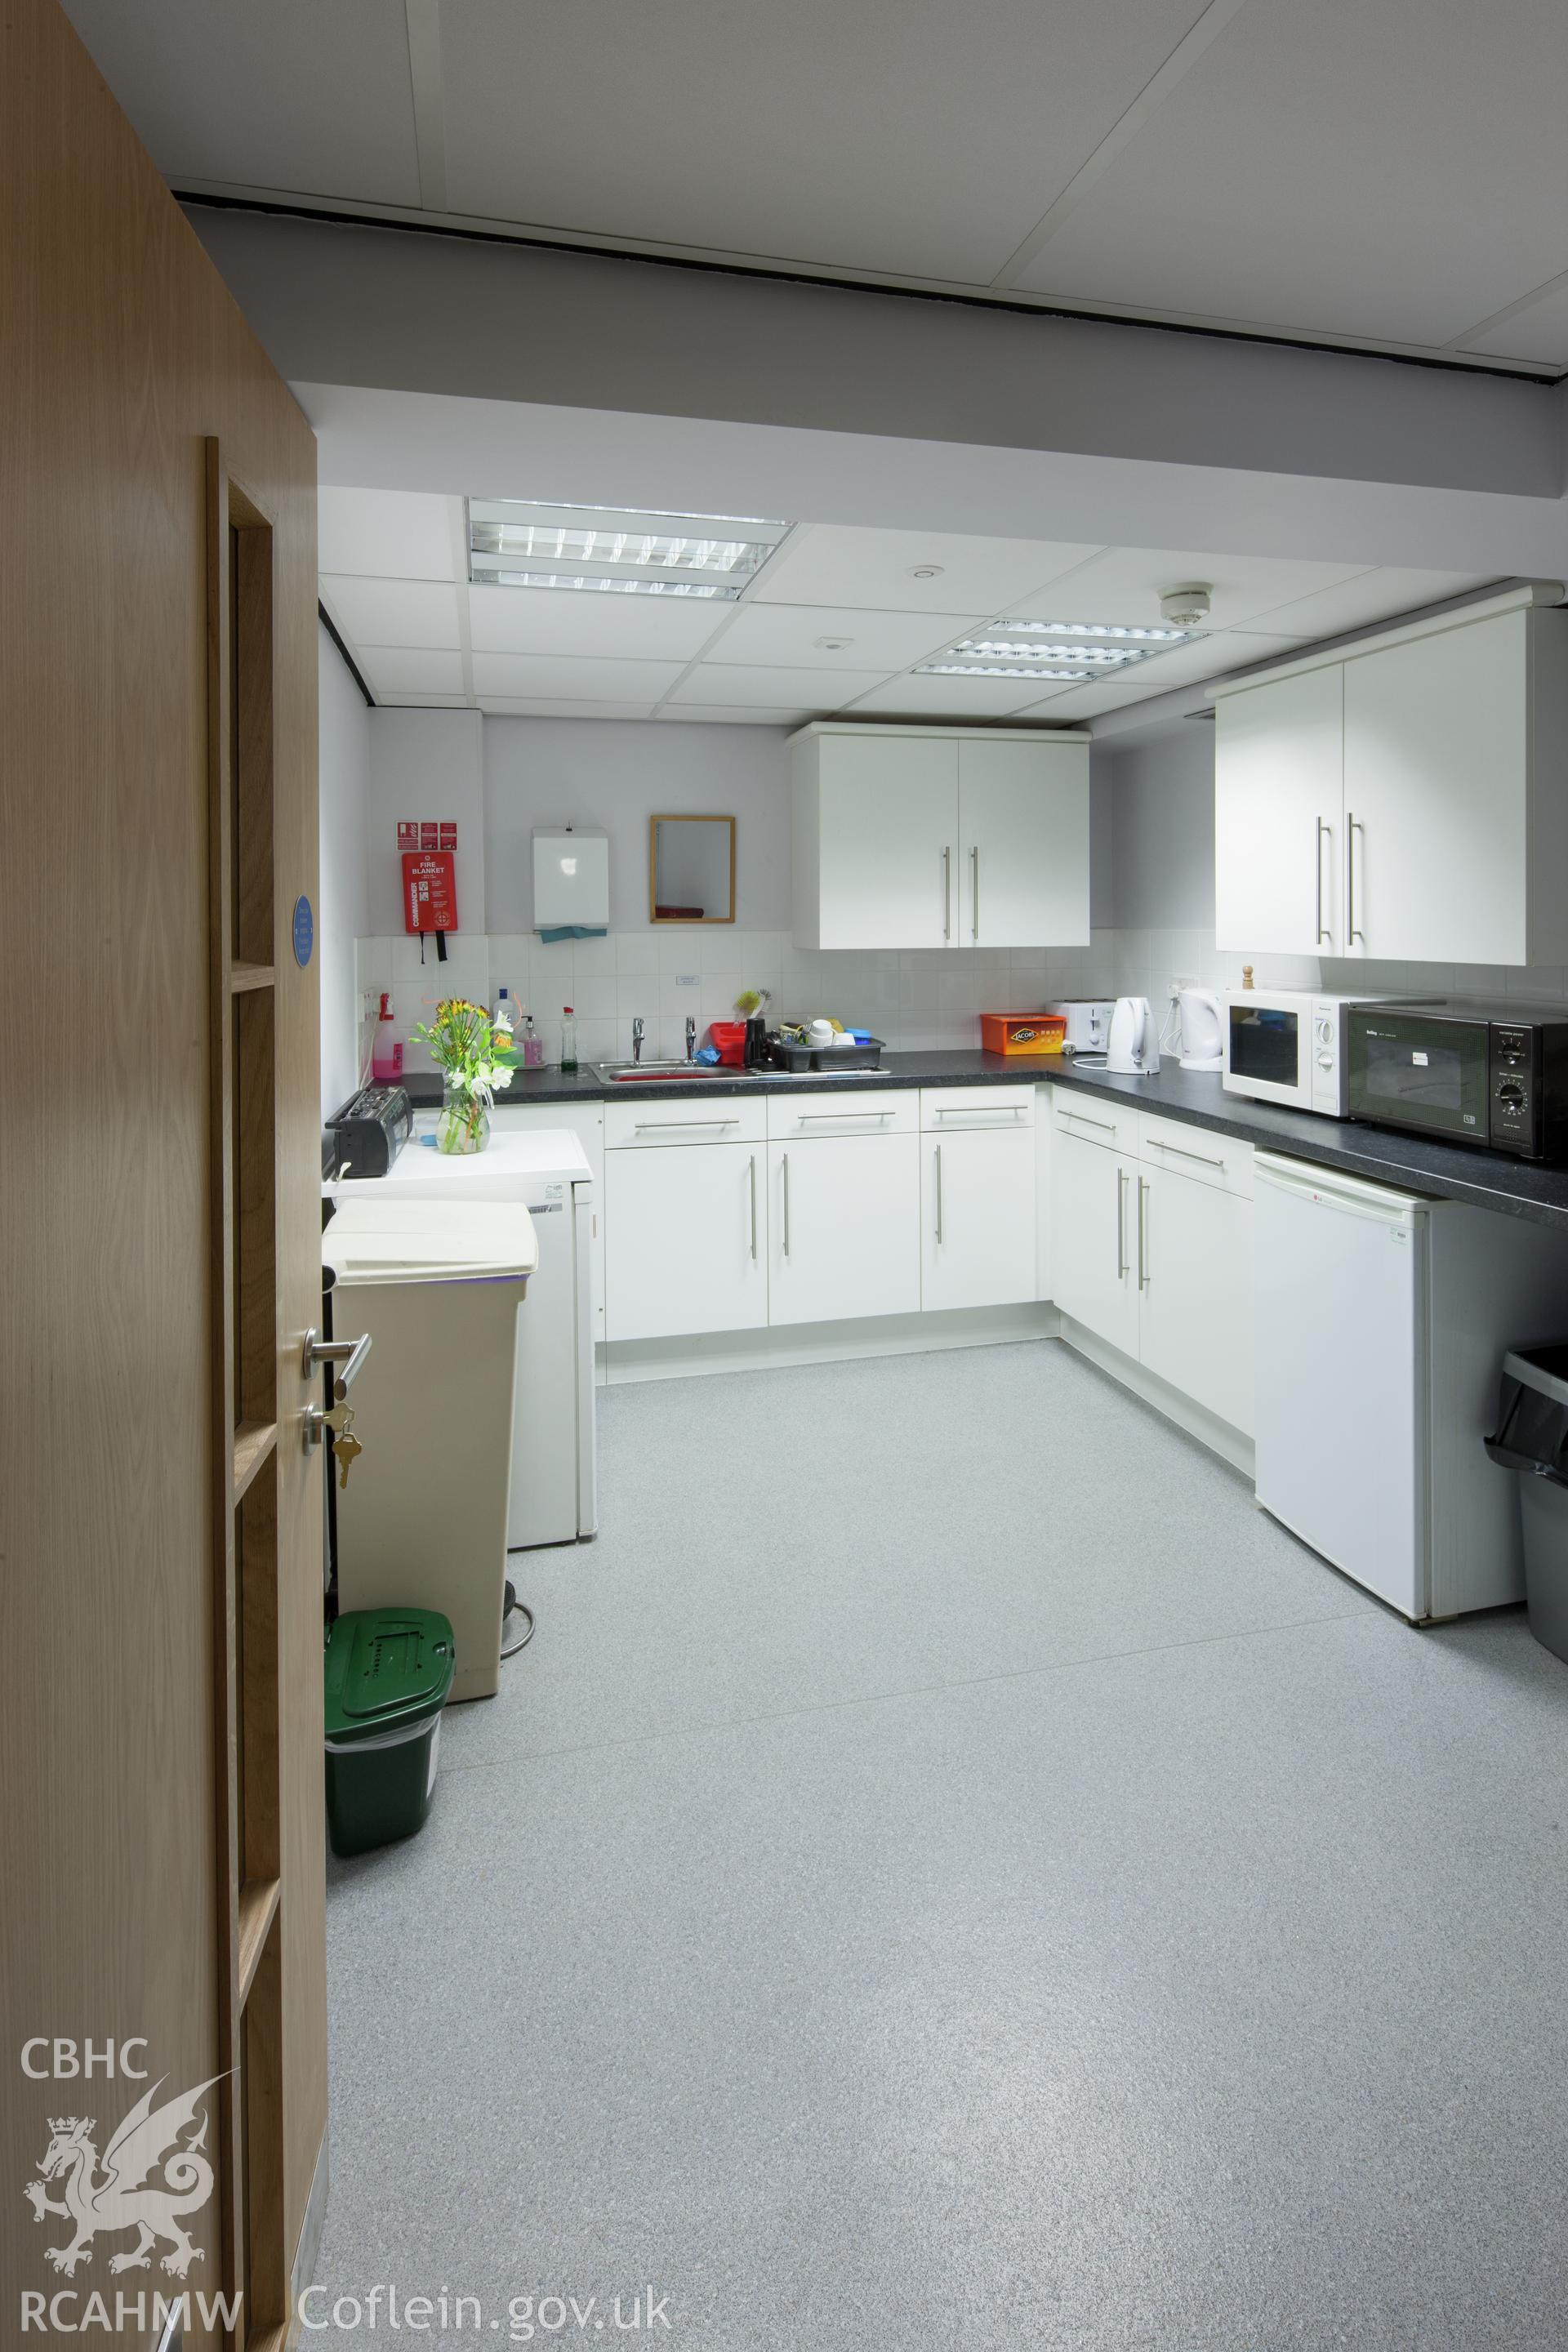 Ground floor, Day Centre kitchen.